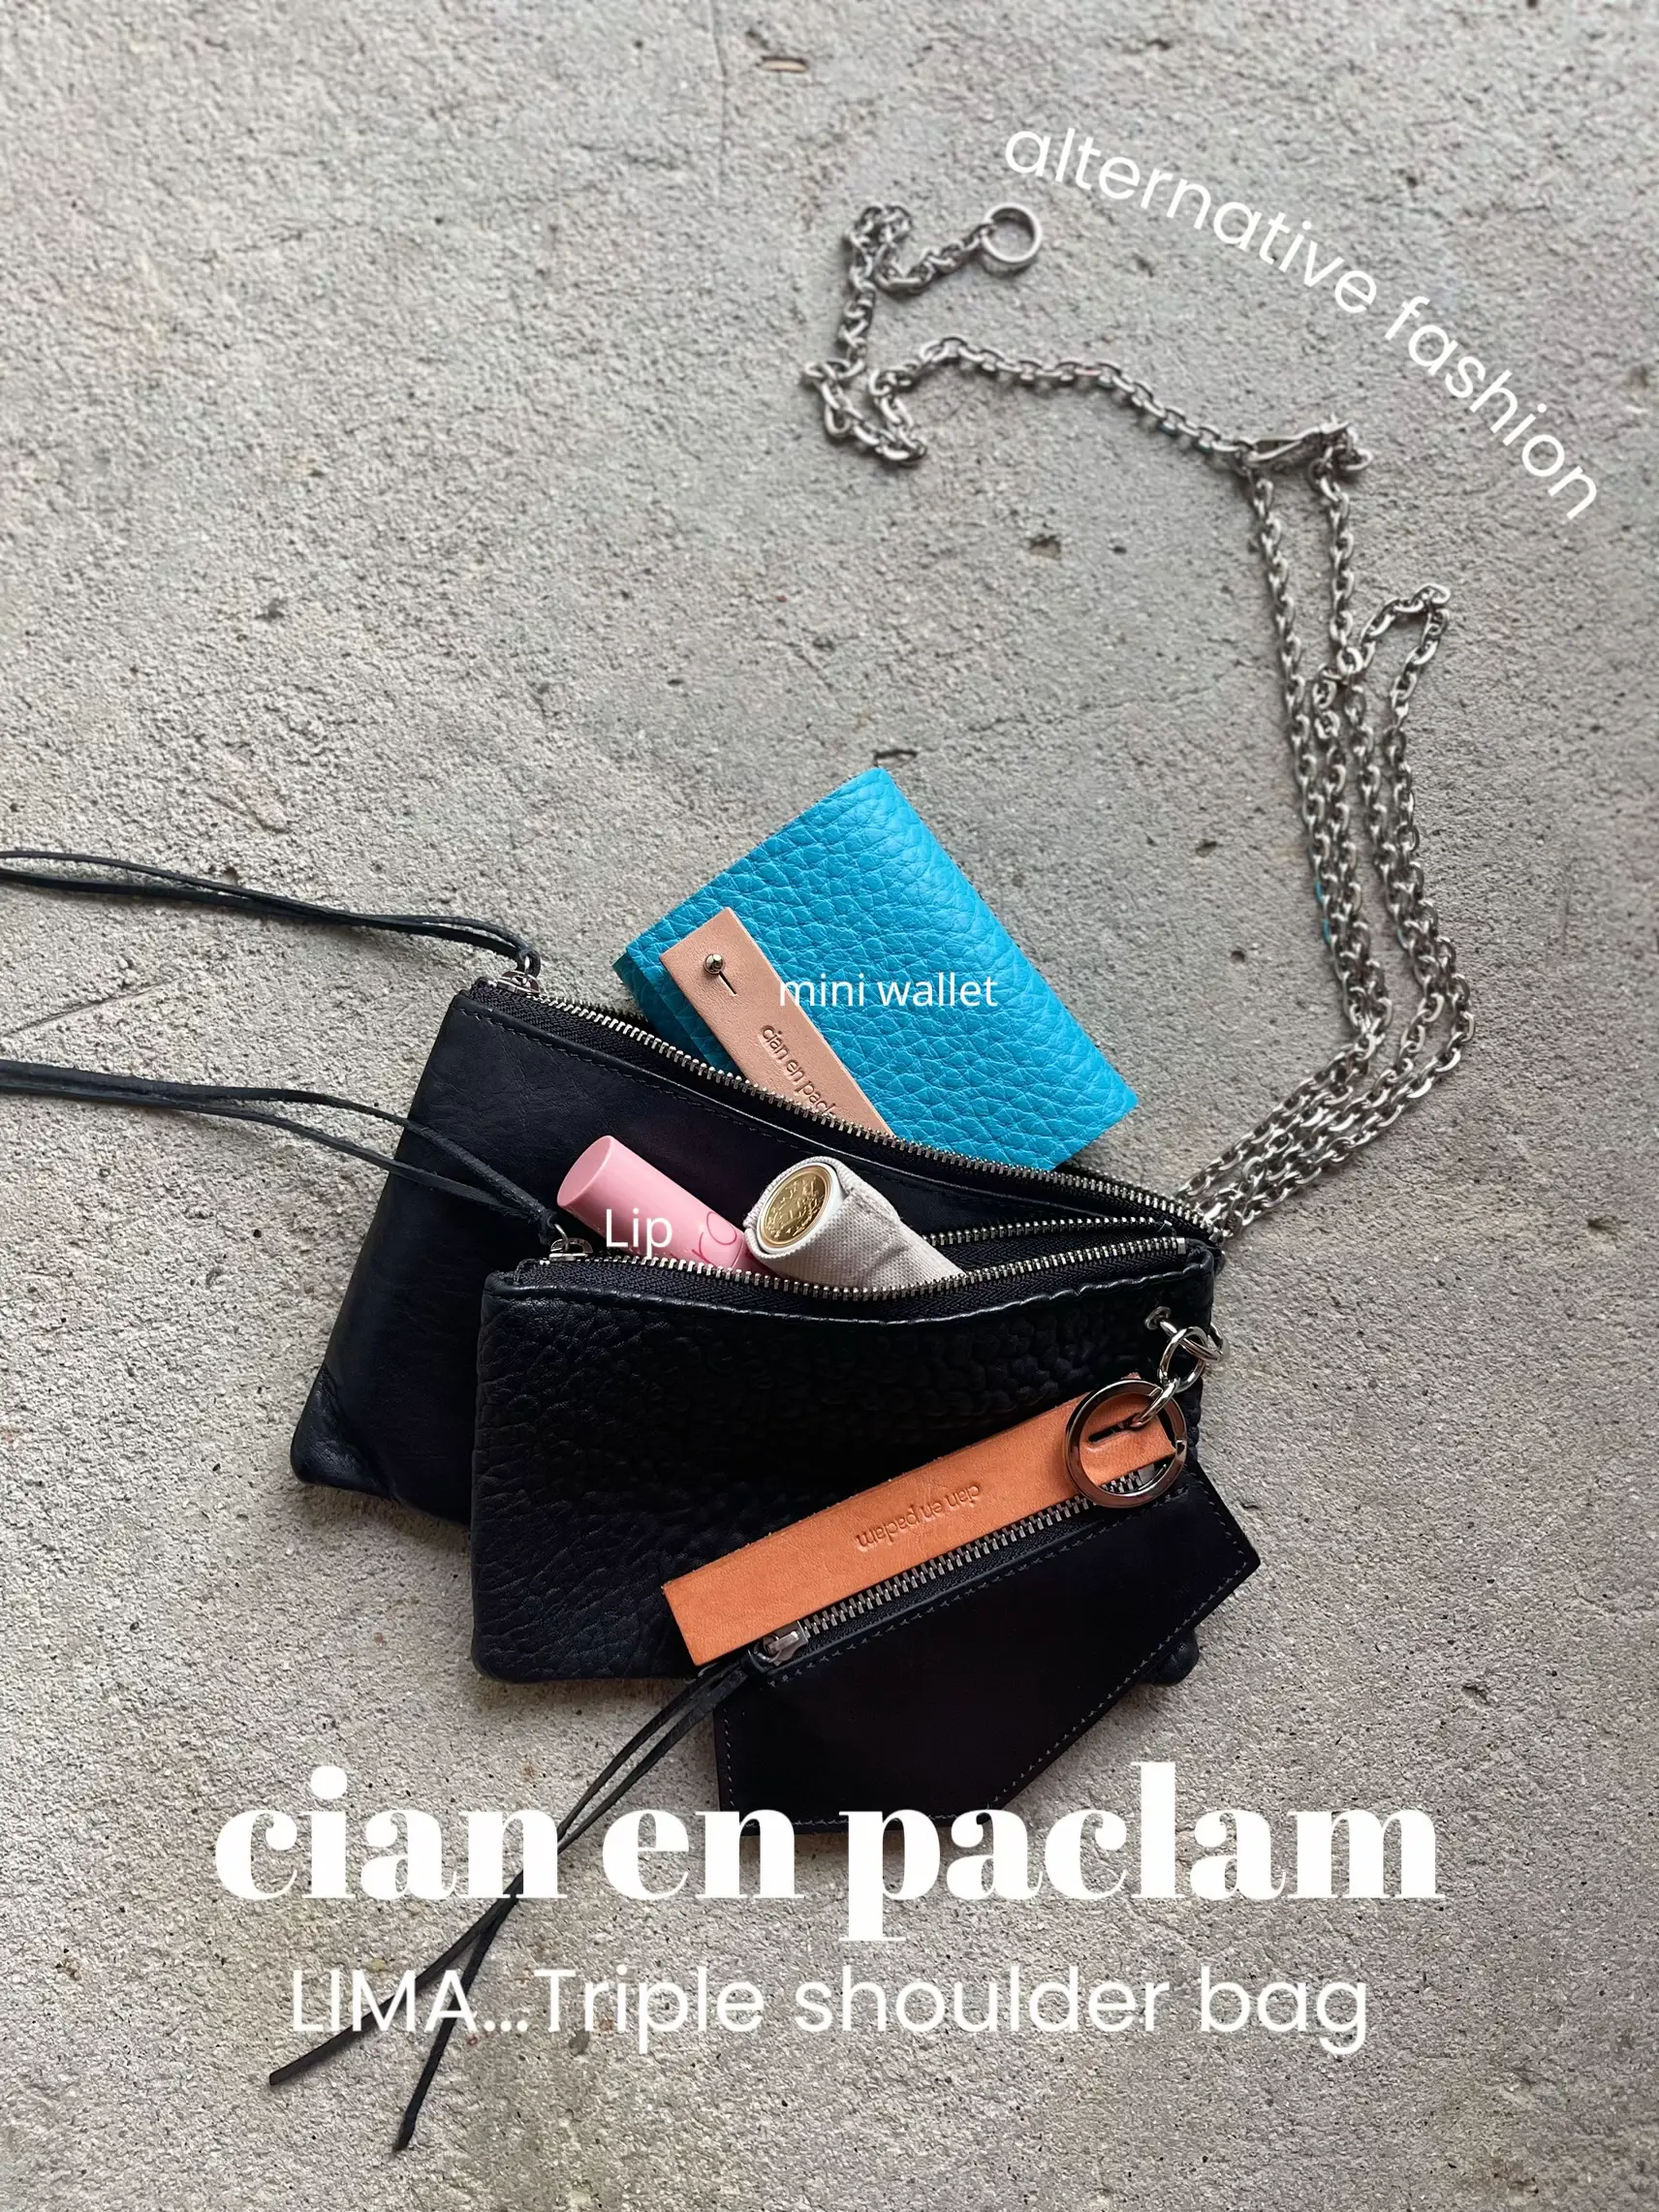 cian en paclam チェーンバッグ - ファッション